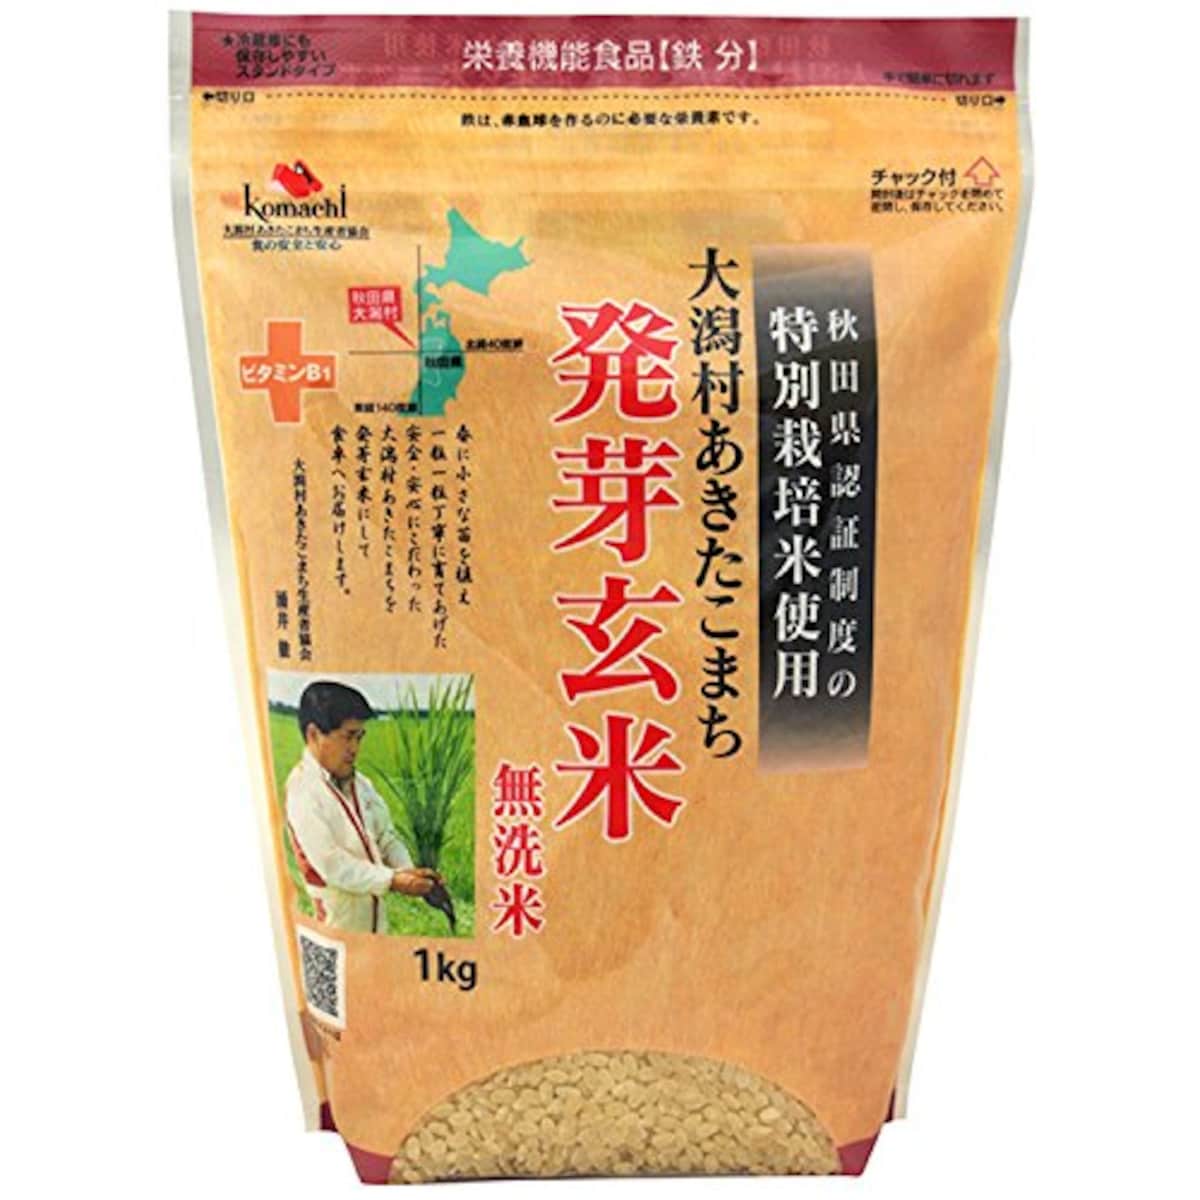 特別栽培米 大潟村あきたこまち 発芽玄米鉄分 1kg